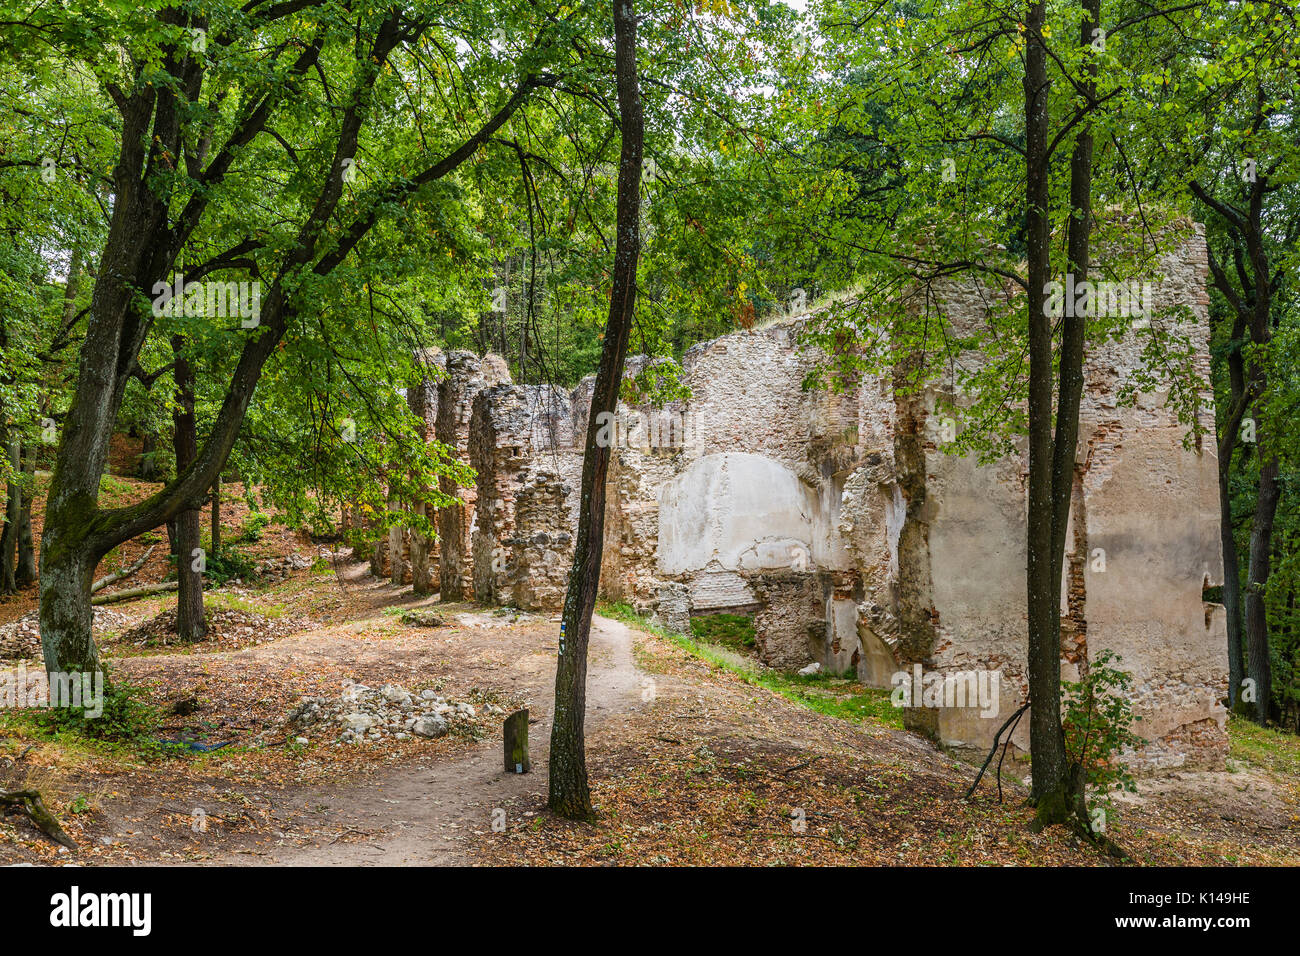 Rovine del monastero katarinka nelle foreste dei Carpazi al di sopra del villaggio di dechtice, Slovacchia Foto Stock